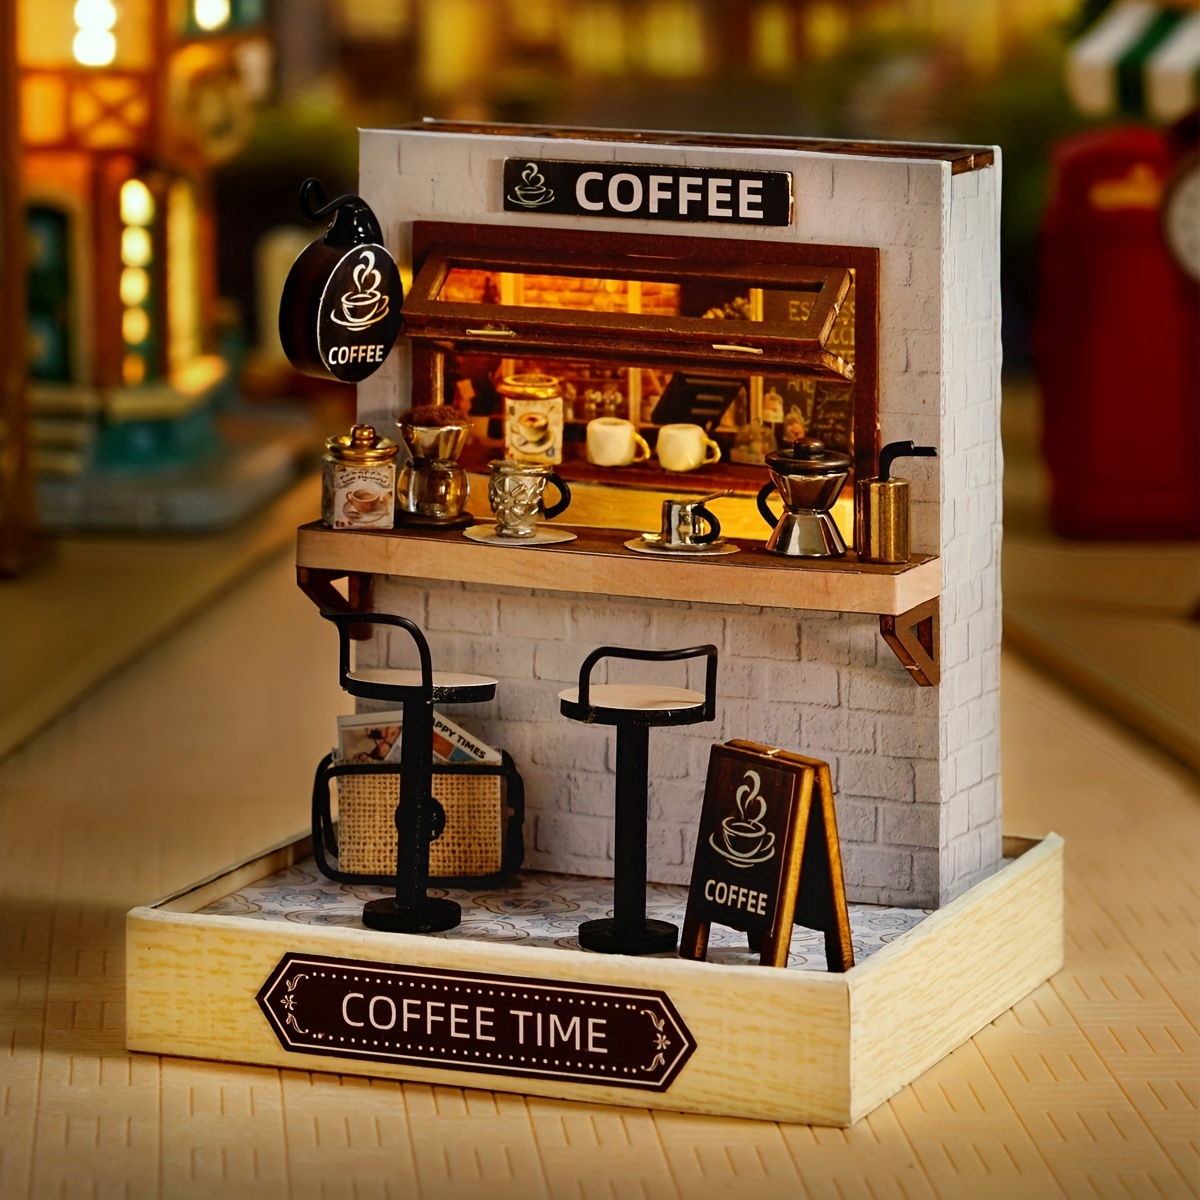 Mini Cafe